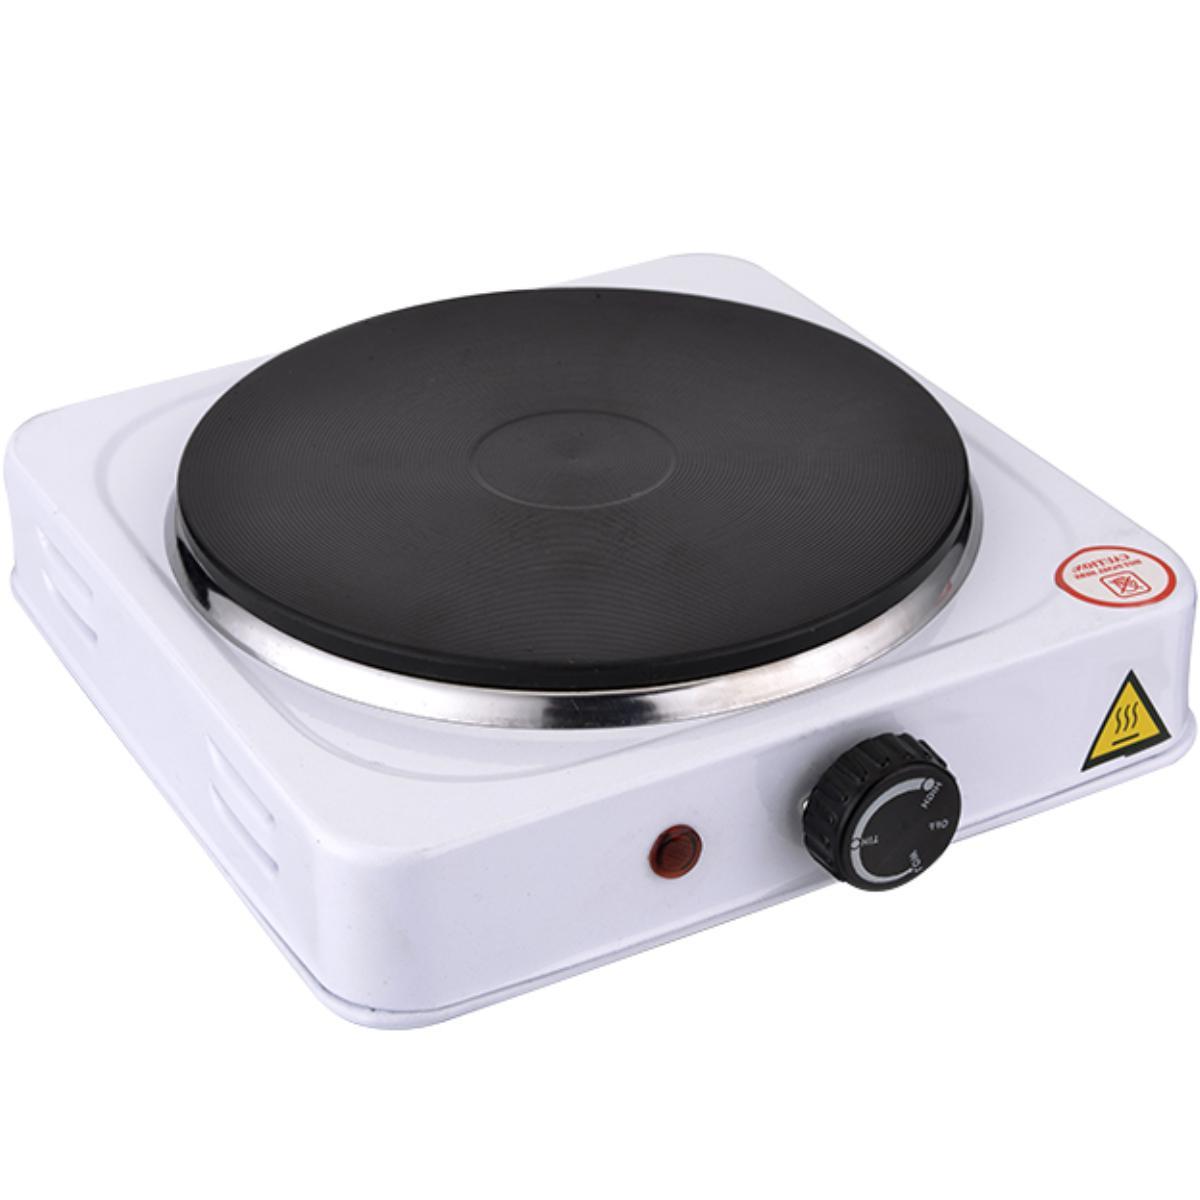 Elektrische kookplaat - Merk: Able & Borret Aantal pitten: 1 Diameter: 15.5 cm 1000 watt Voeding: Netstroom